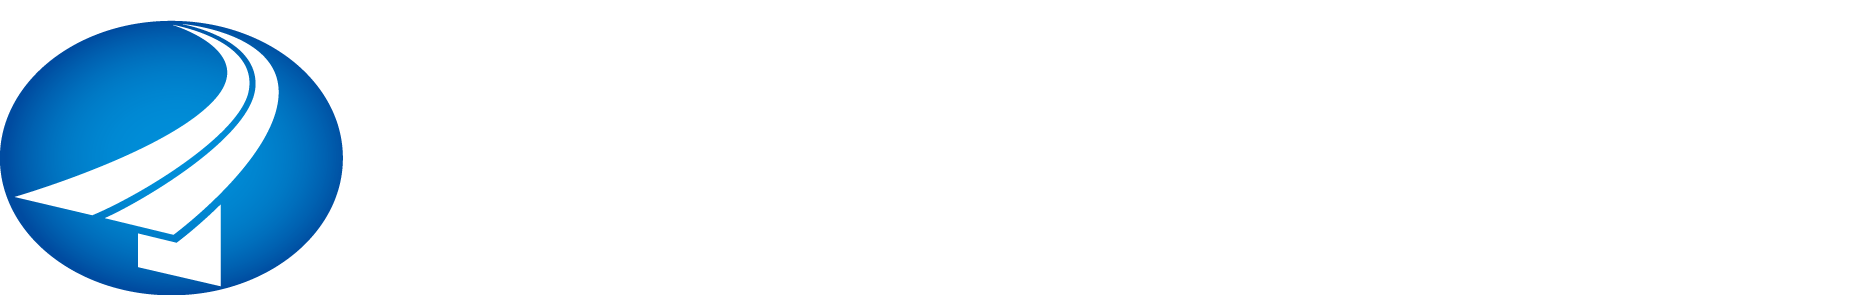 株式会社テクノ阪神